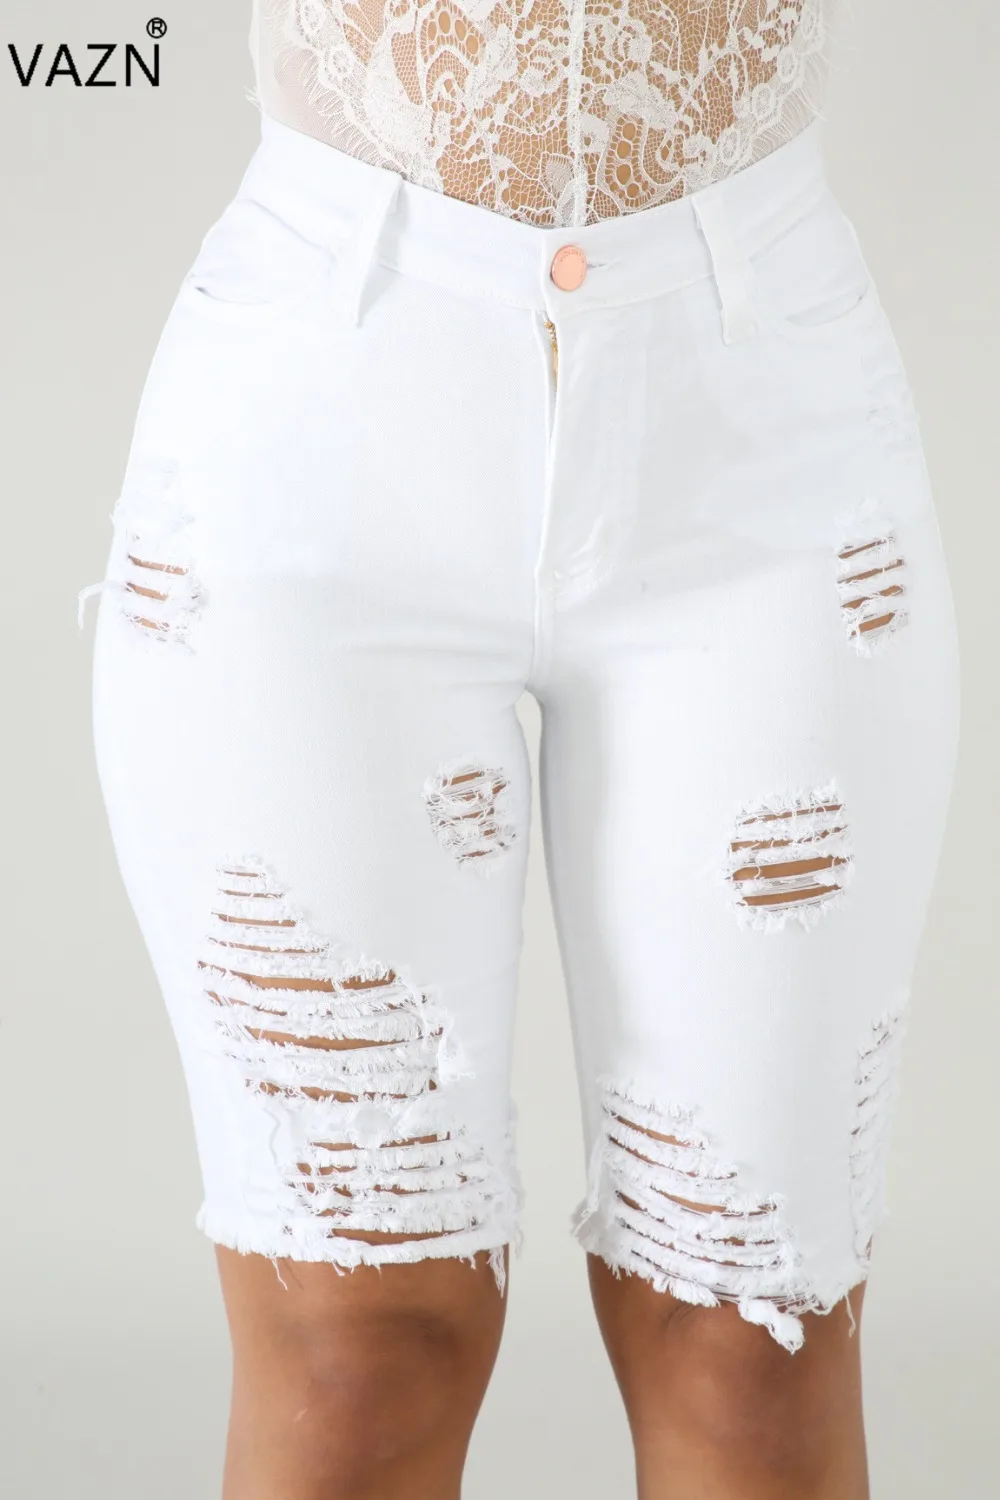 VAZN SM3261, новинка, летние сексуальные женские джинсы средней длины, 4 цвета, рваные джинсы-скинни с пуговицами, сексуальные модные джинсы со средней талией для девочек